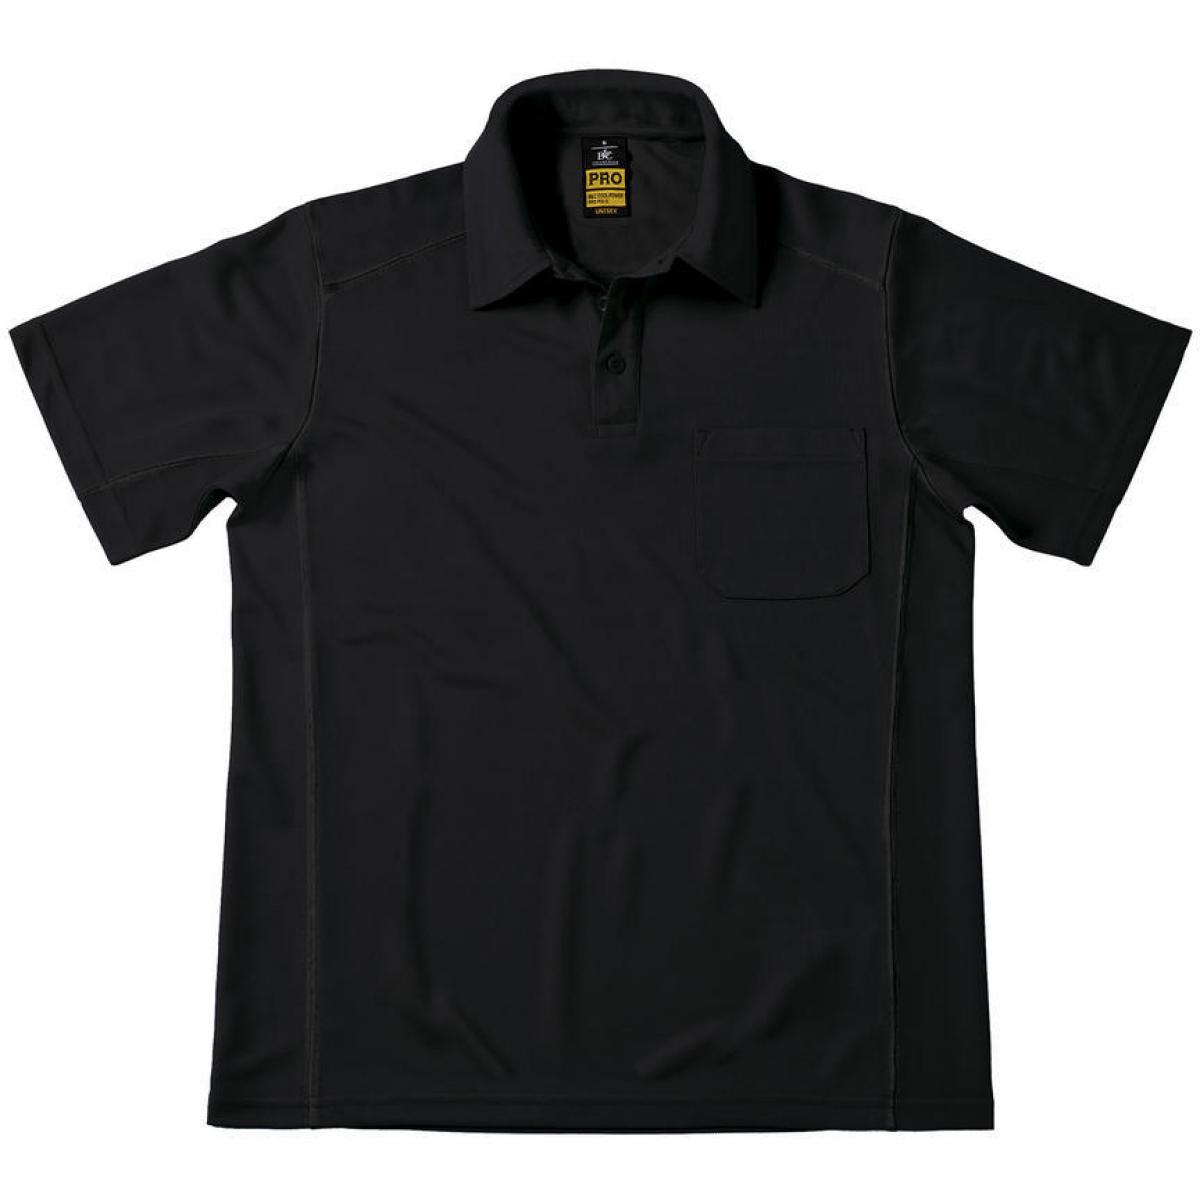 Hersteller: B&C Pro Collection Herstellernummer: PUC12 Artikelbezeichnung: Coolpower Pocket Workwear Poloshirt Herren Farbe: Black